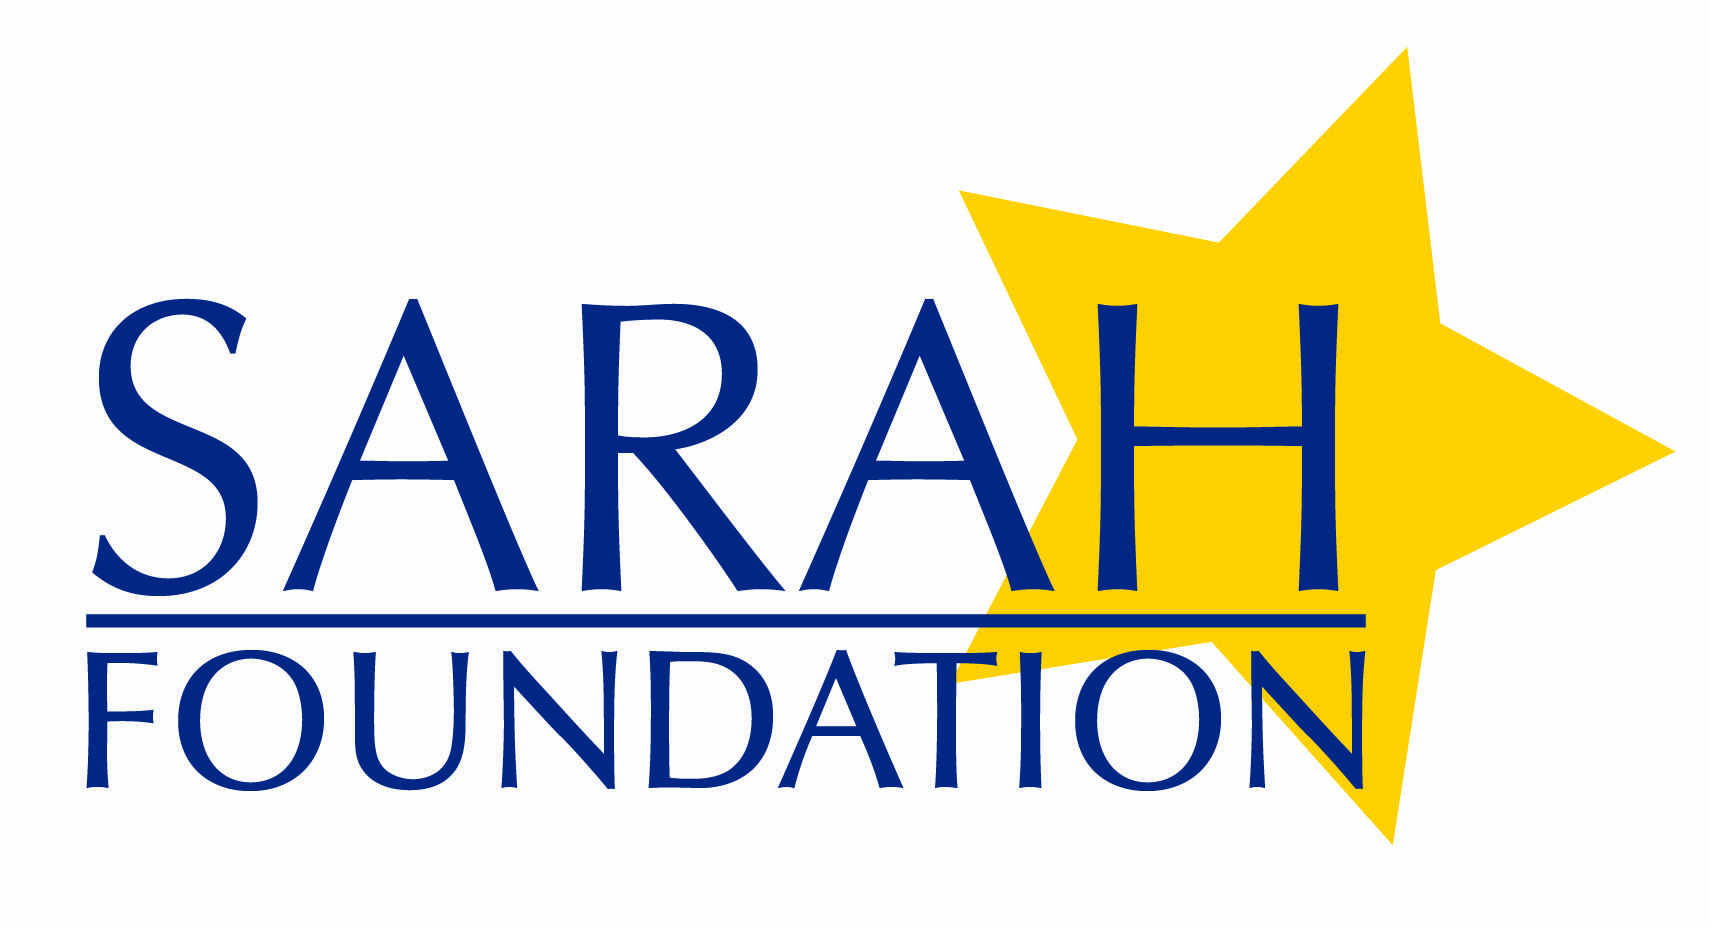 Sarah Foundation Logo